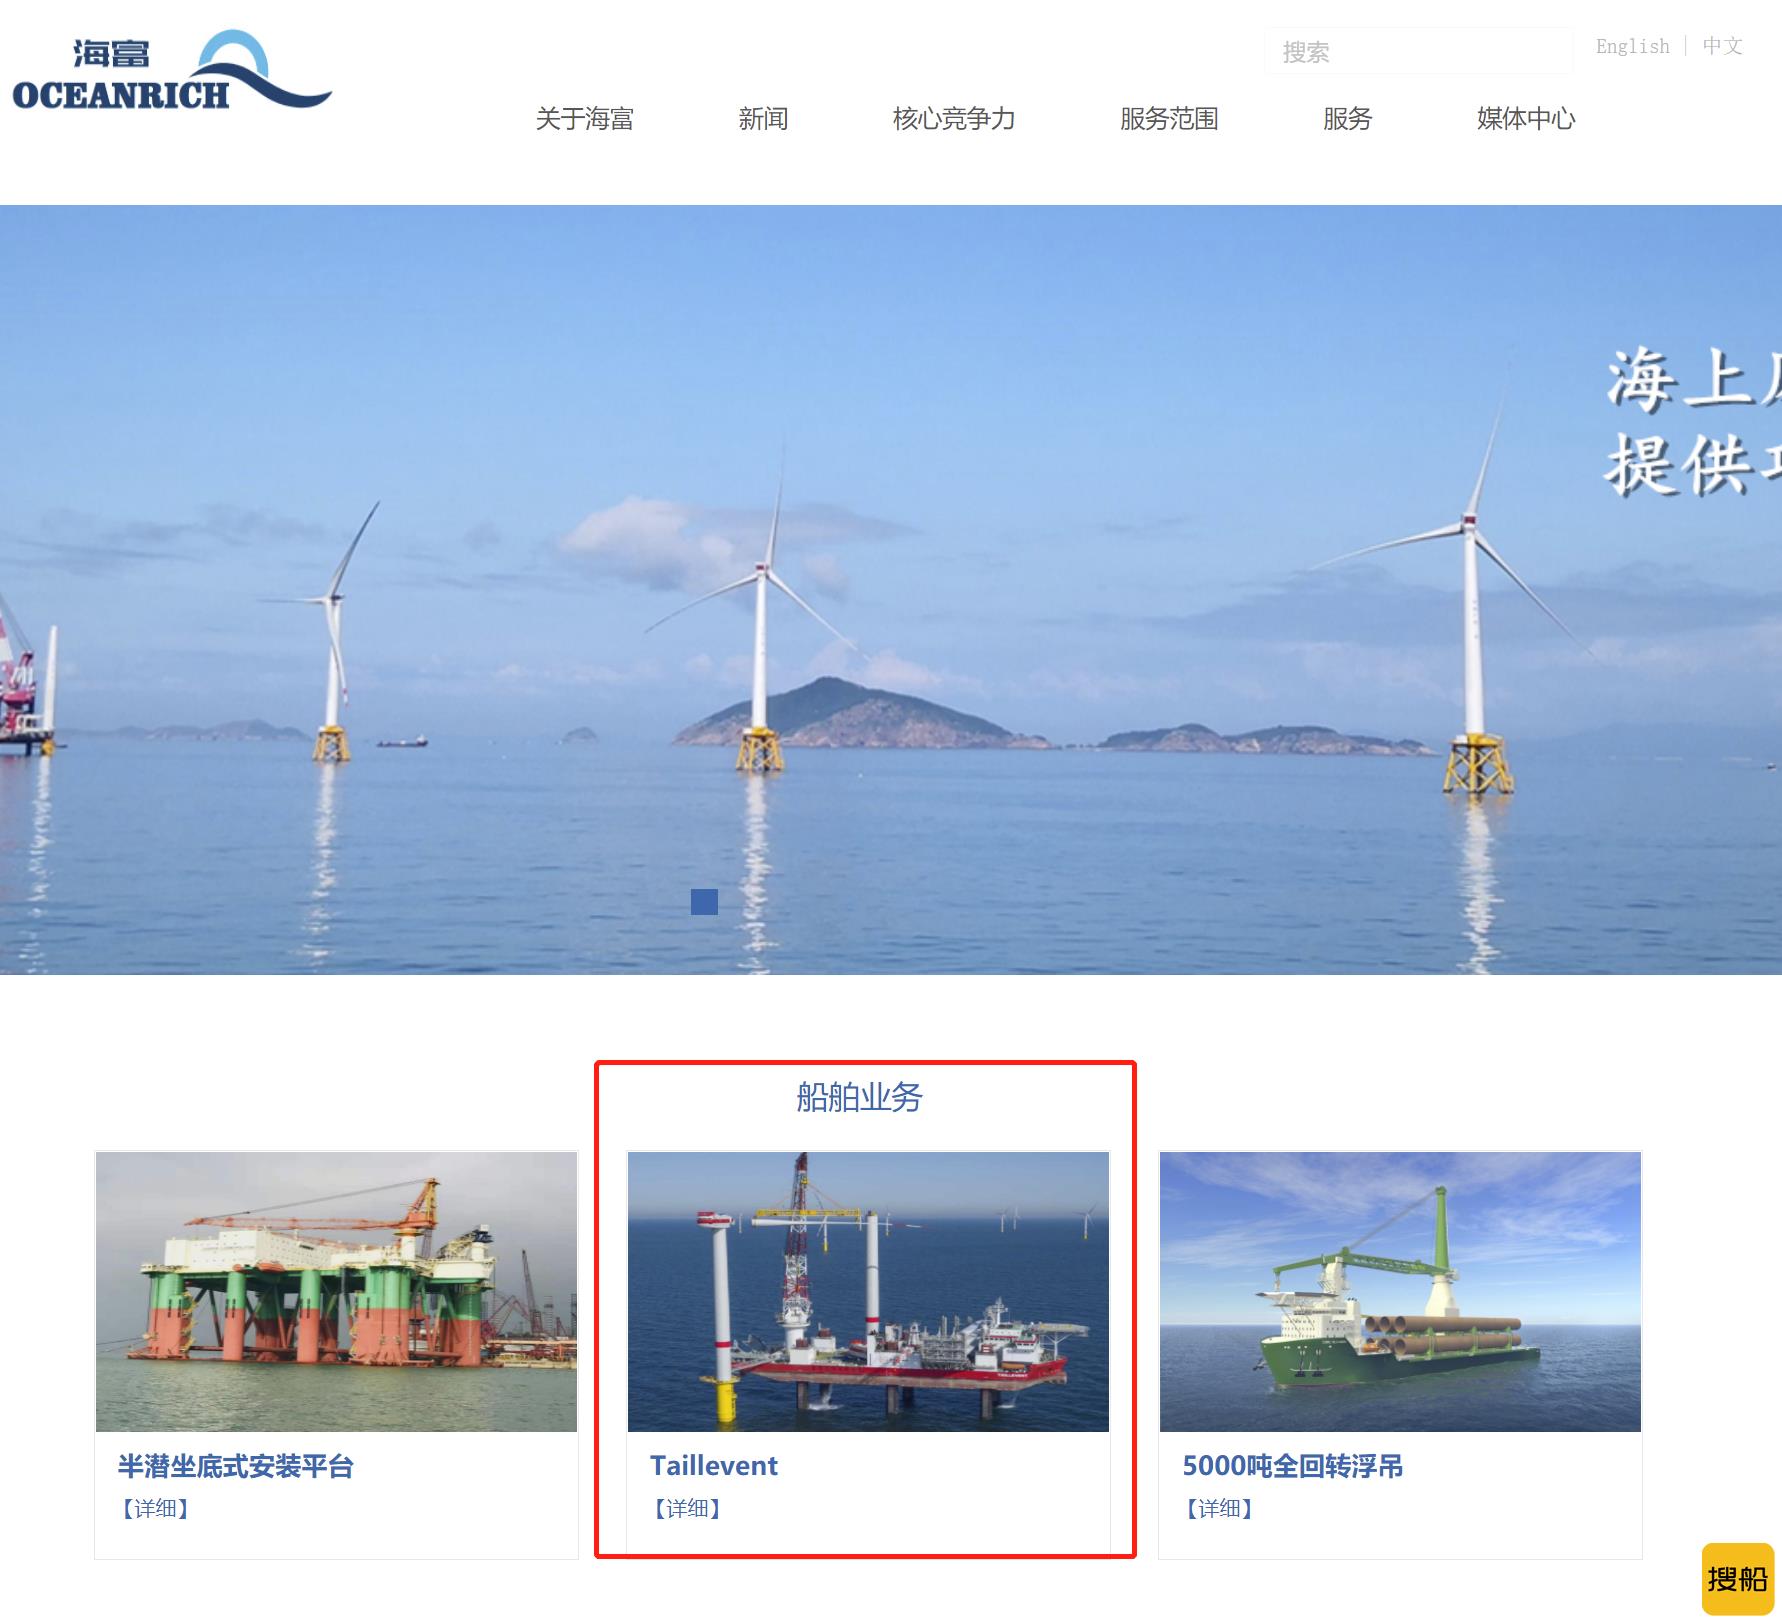 海富实业收购一艘自升式风电安装船